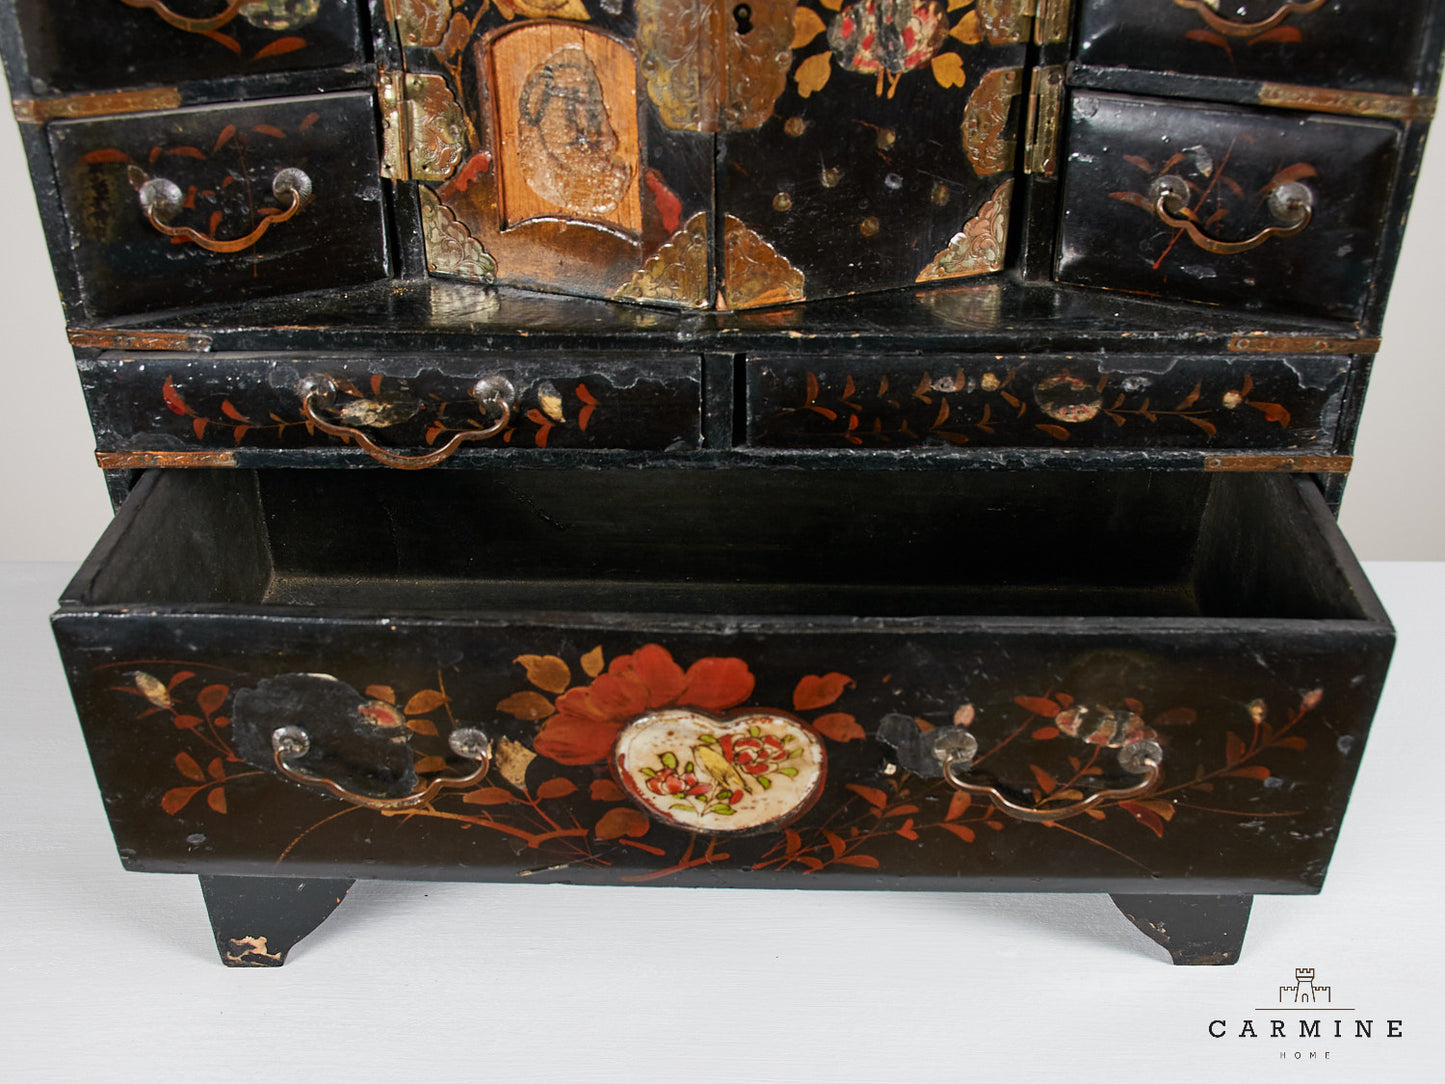 Miniatur China Kabinettkästchen, Ende 19. Jahrhundert